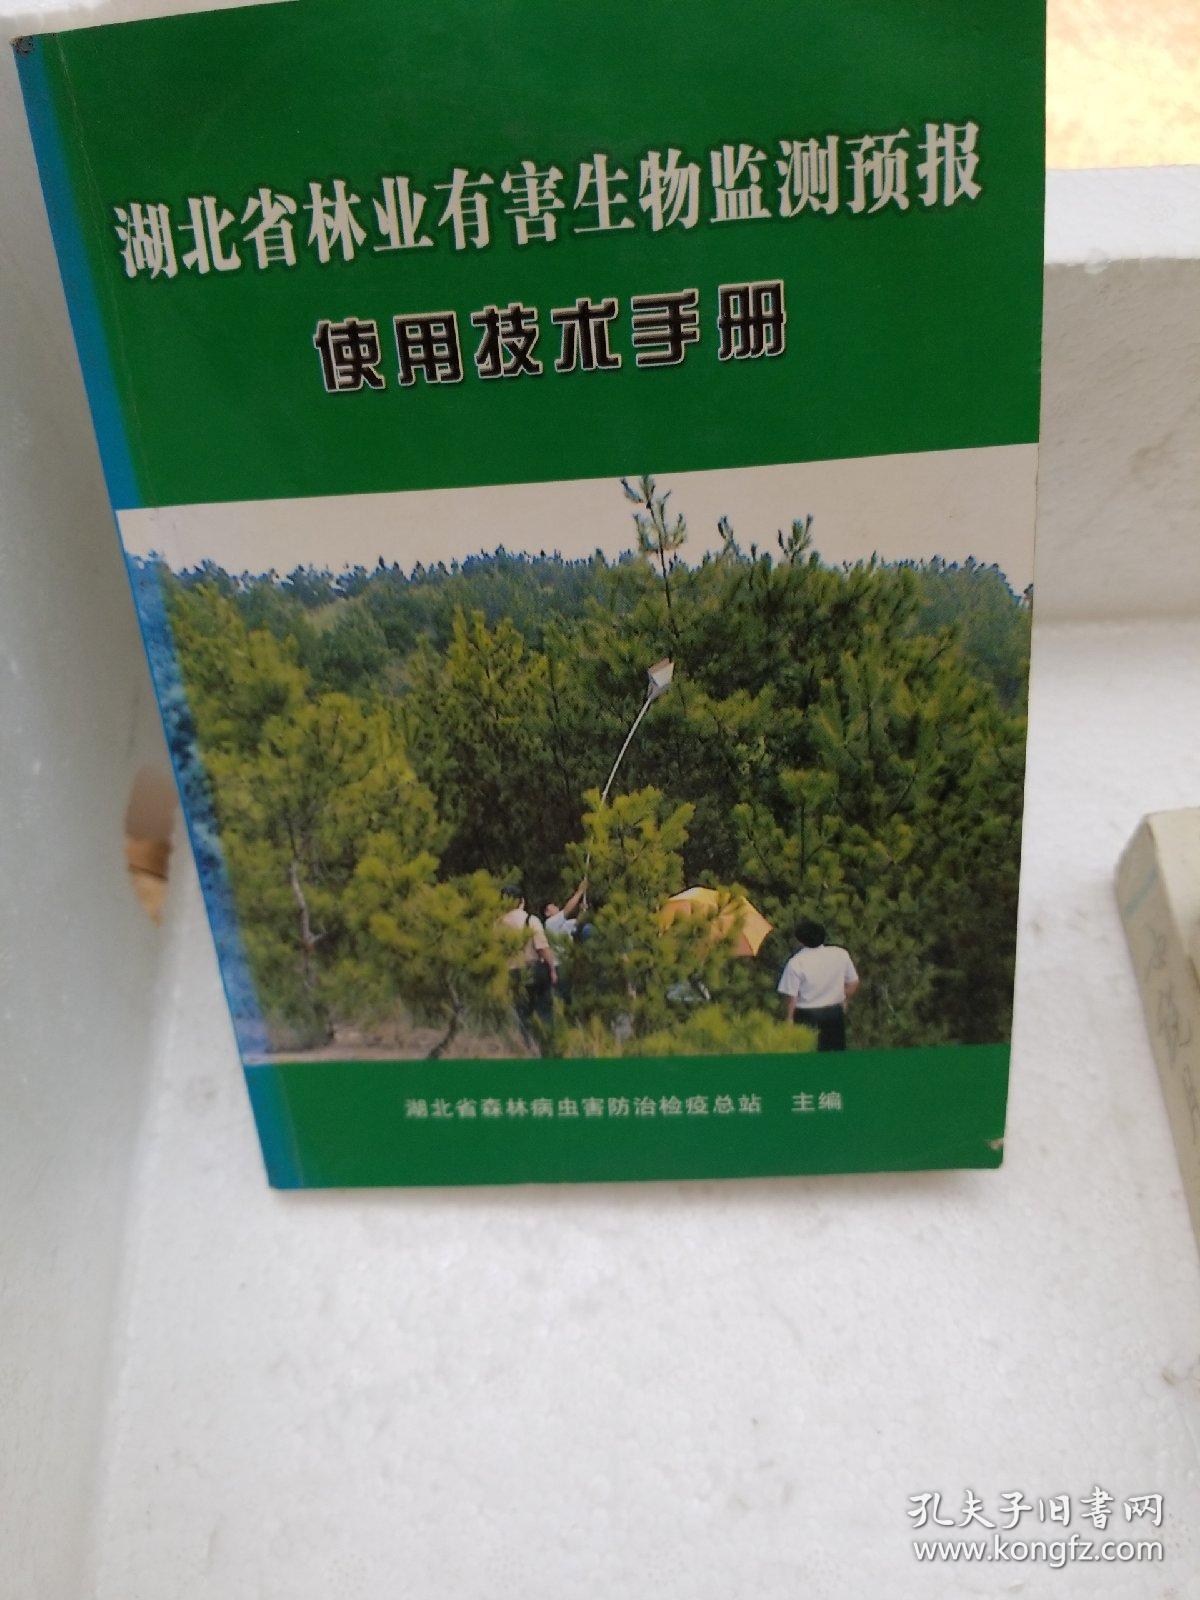 湖北省林业有害生物监测预报